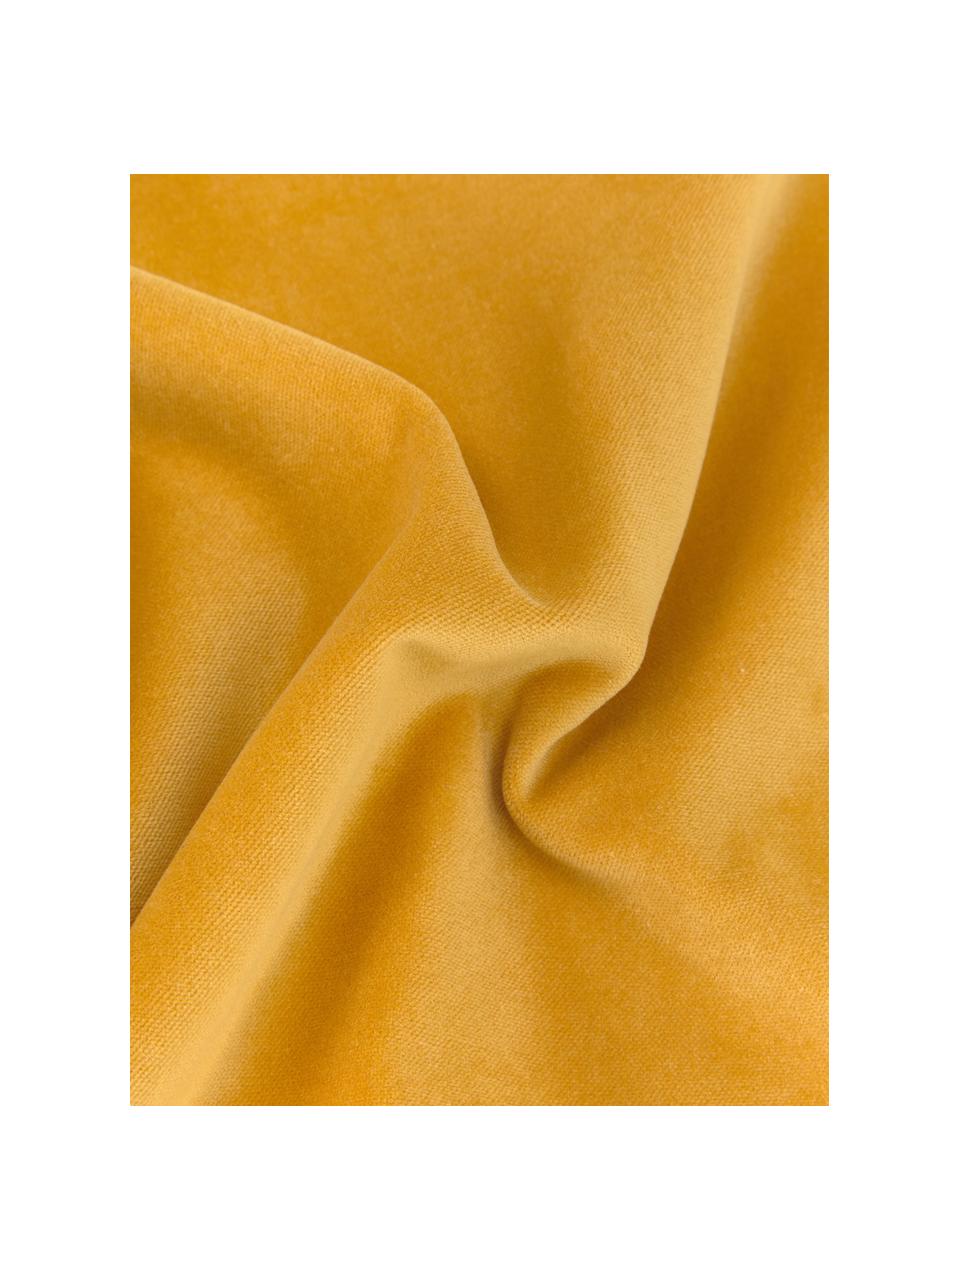 Federa arredo in velluto giallo ocra Dana, 100% velluto di cotone, Giallo ocra, Larg. 40 x Lung. 40 cm